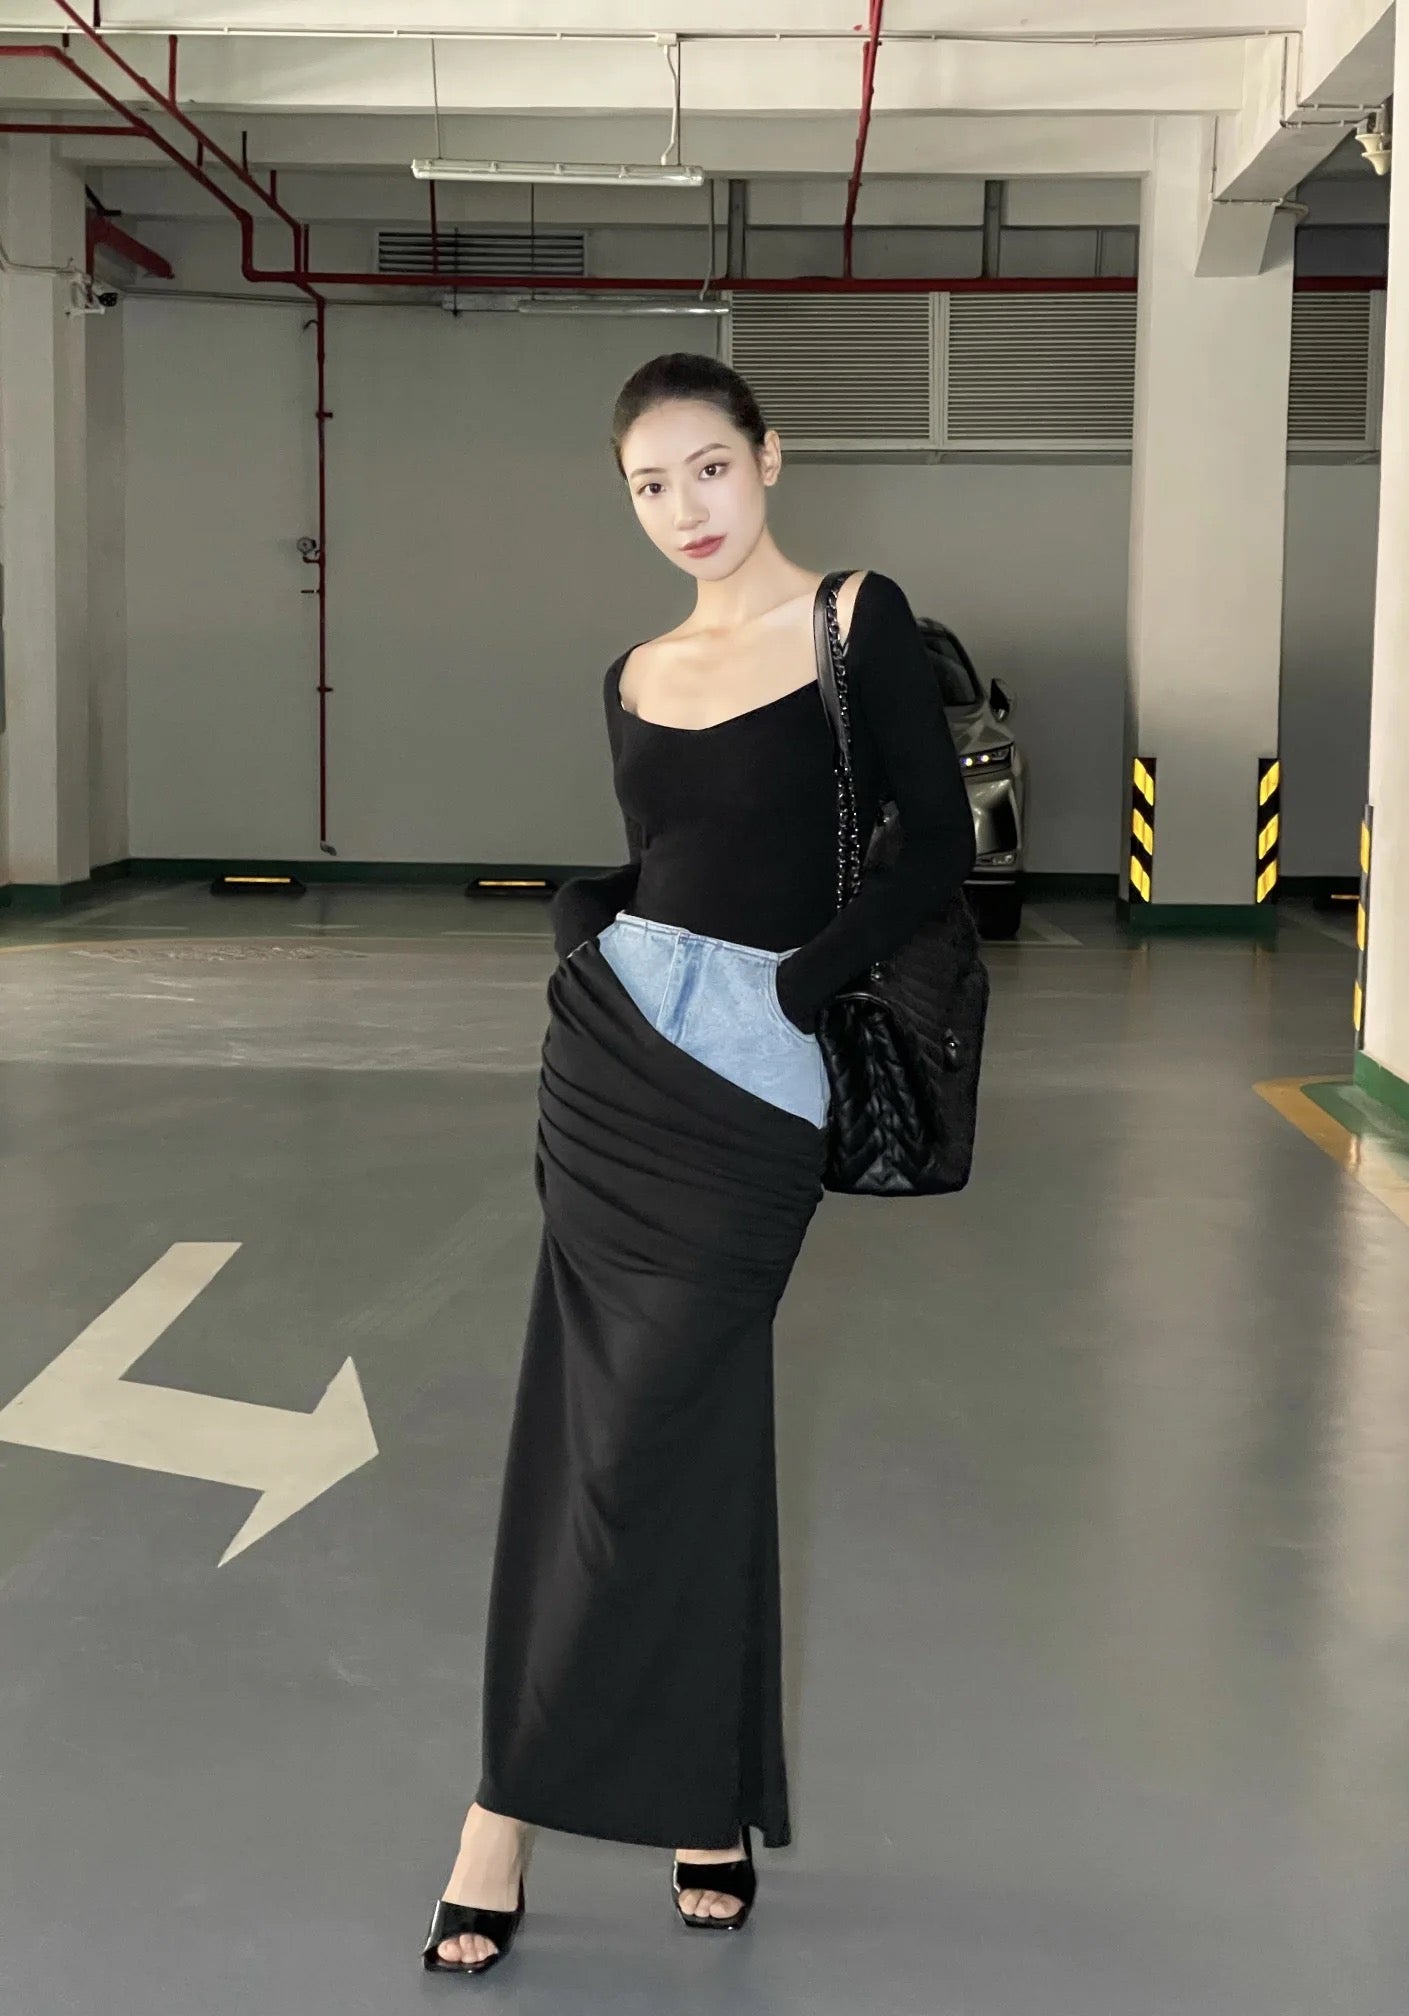 CM-BS023114 Women Preppy Seoul Style Black Pleated Long Denim Skirt